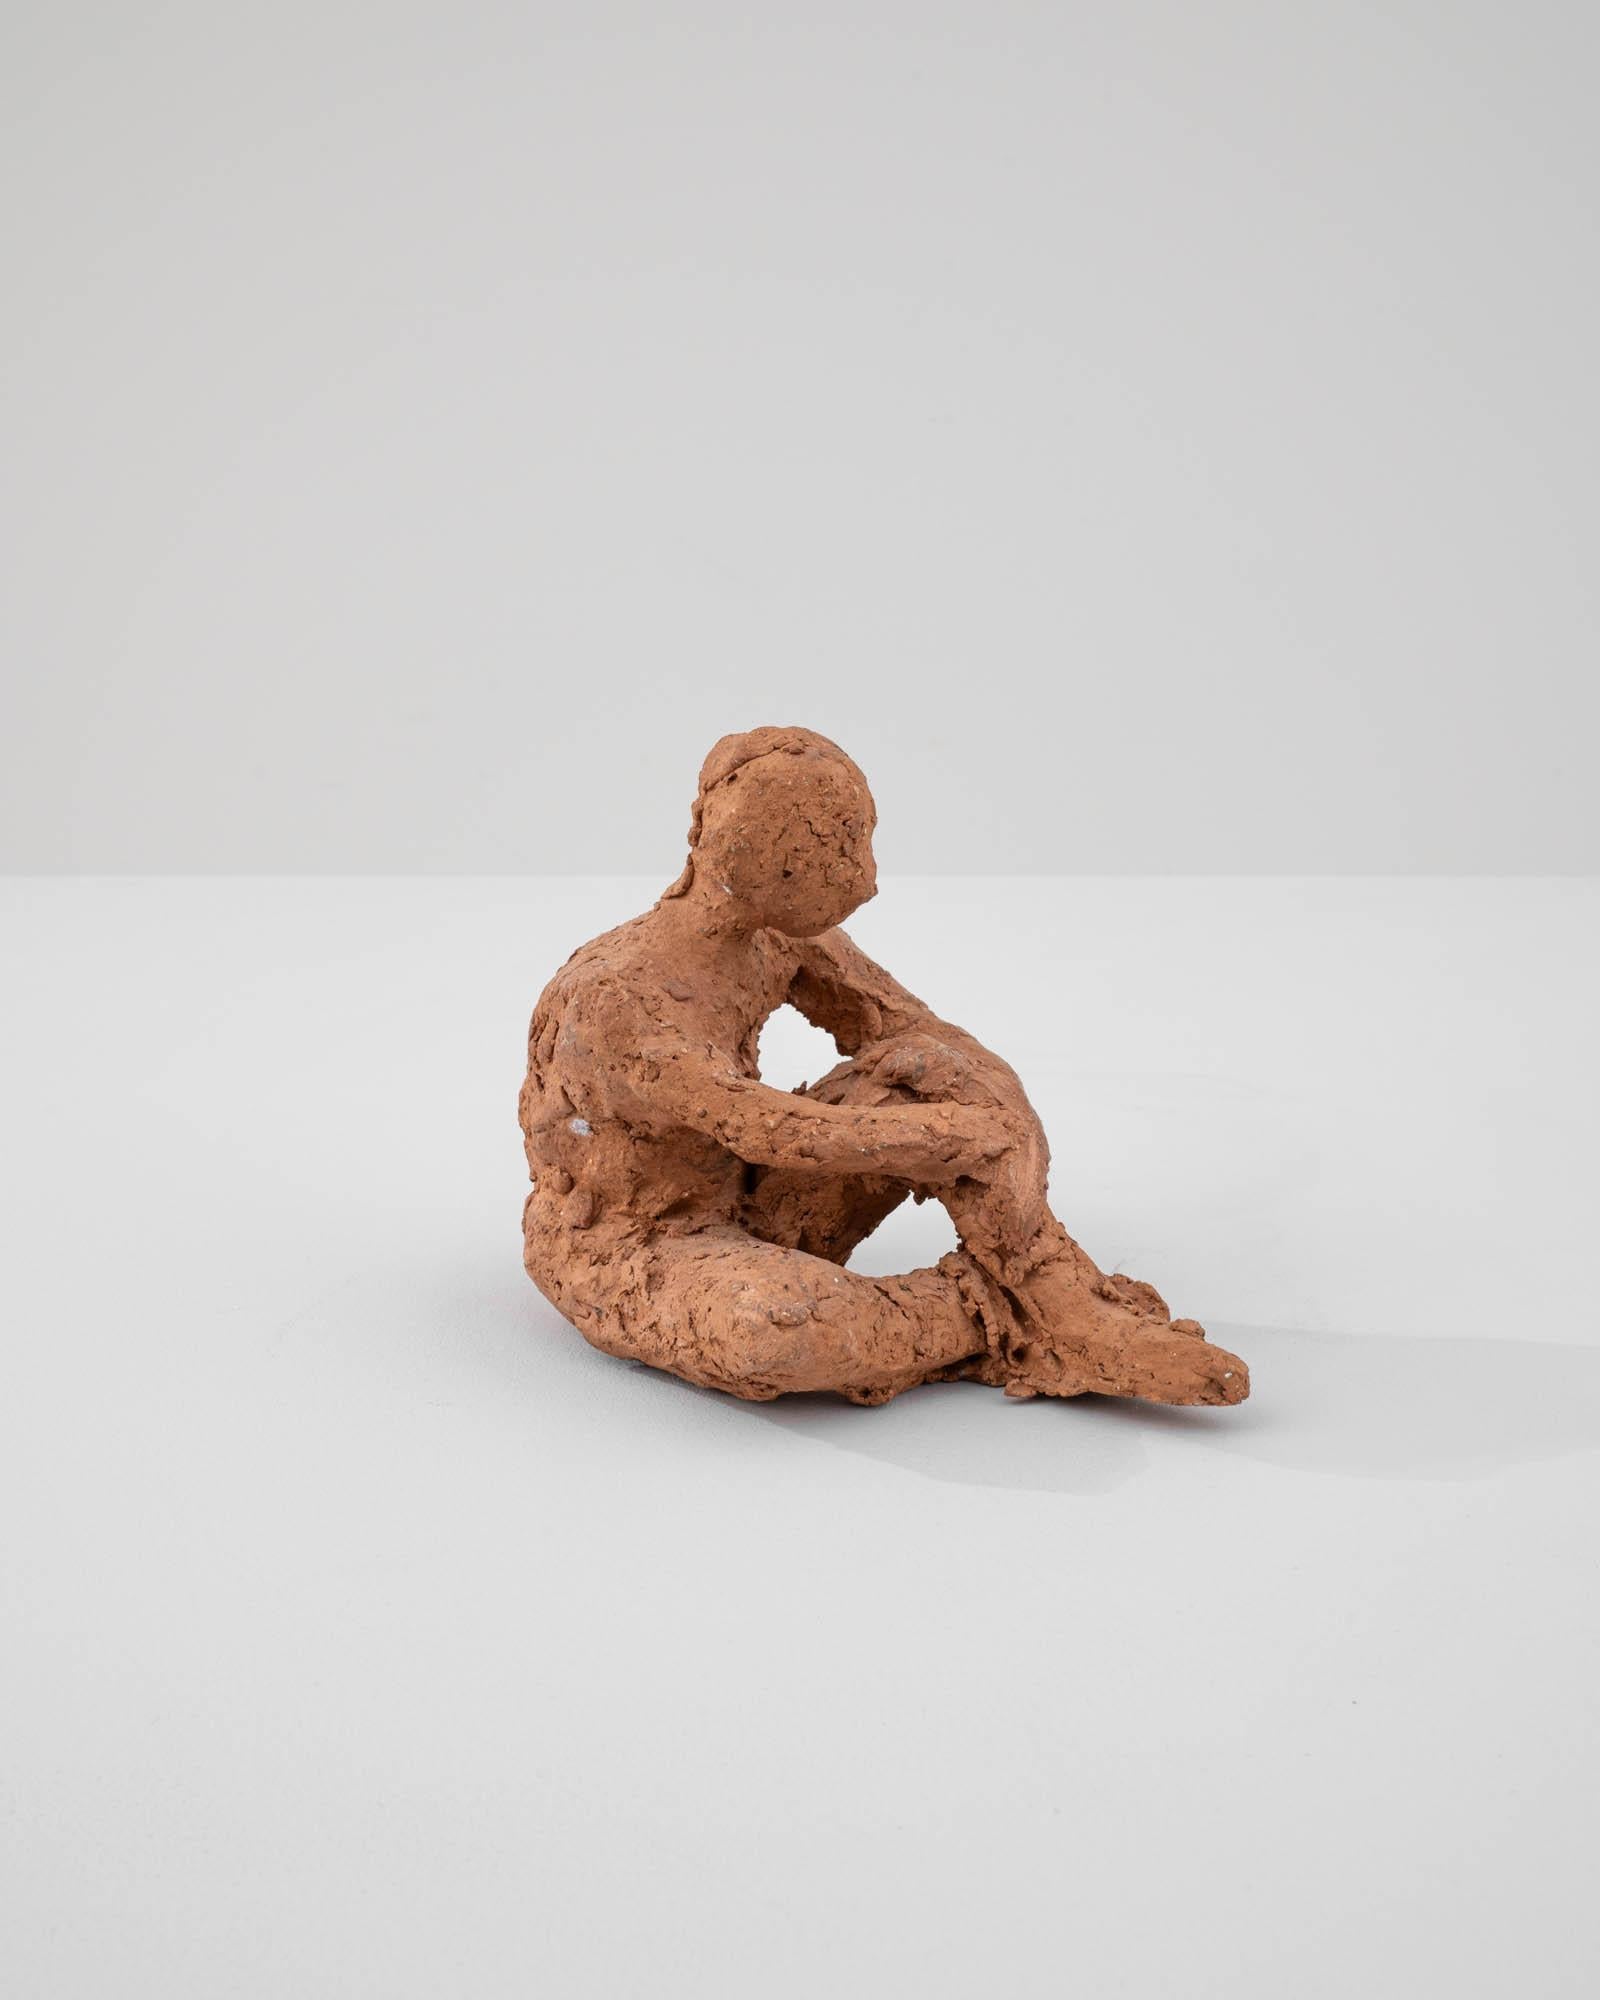 Cette sculpture contemplative en terre cuite française du XXe siècle invite à une pause de réflexion, capturant une figure solitaire dans un moment d'introspection. La texture rugueuse et non raffinée de la terre cuite confère à la pièce une